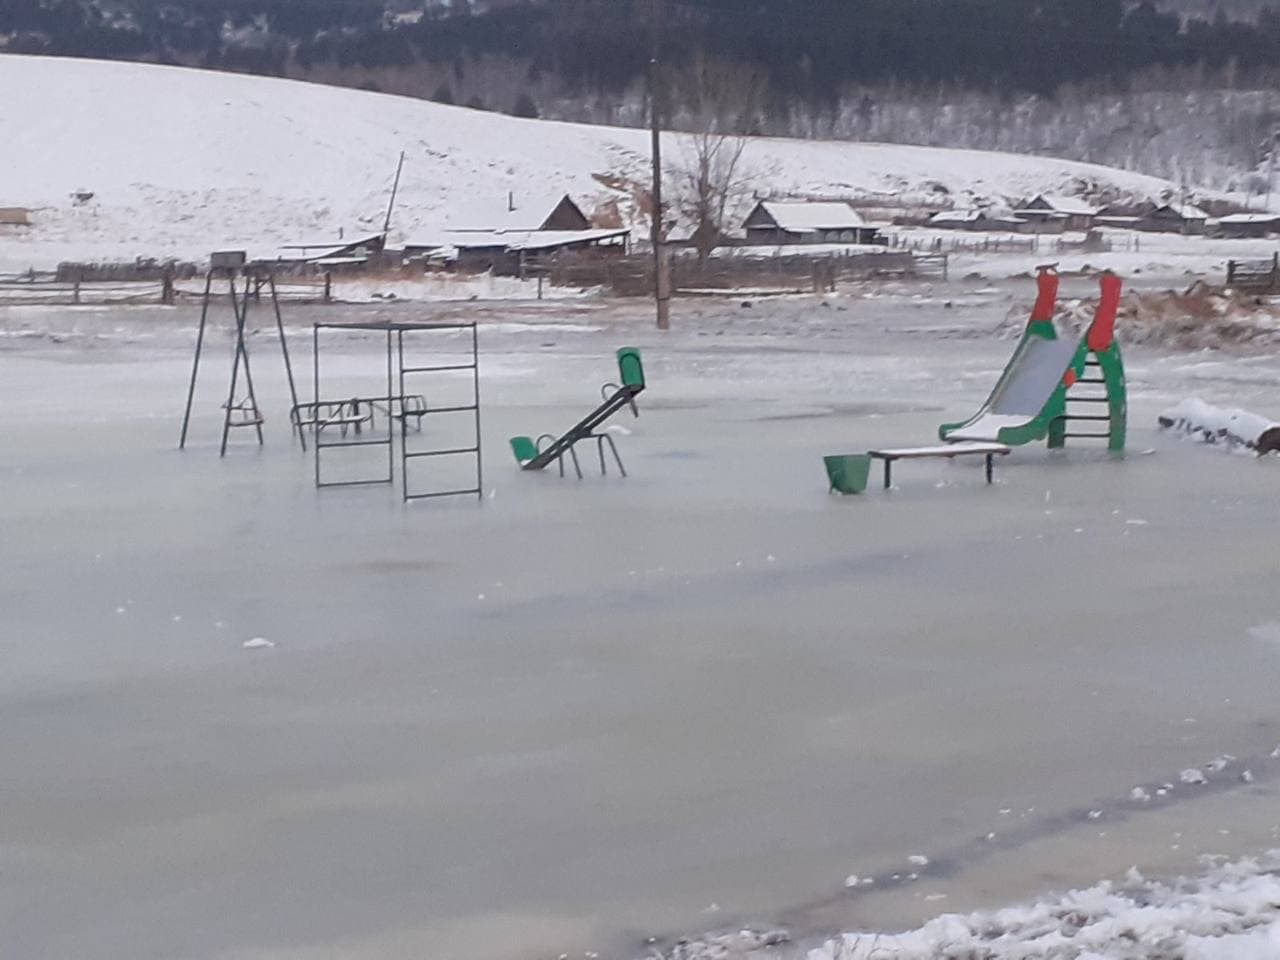  Фоторепортаж из Чернышевского района Забайкалья, где грунтовые воды затопили село